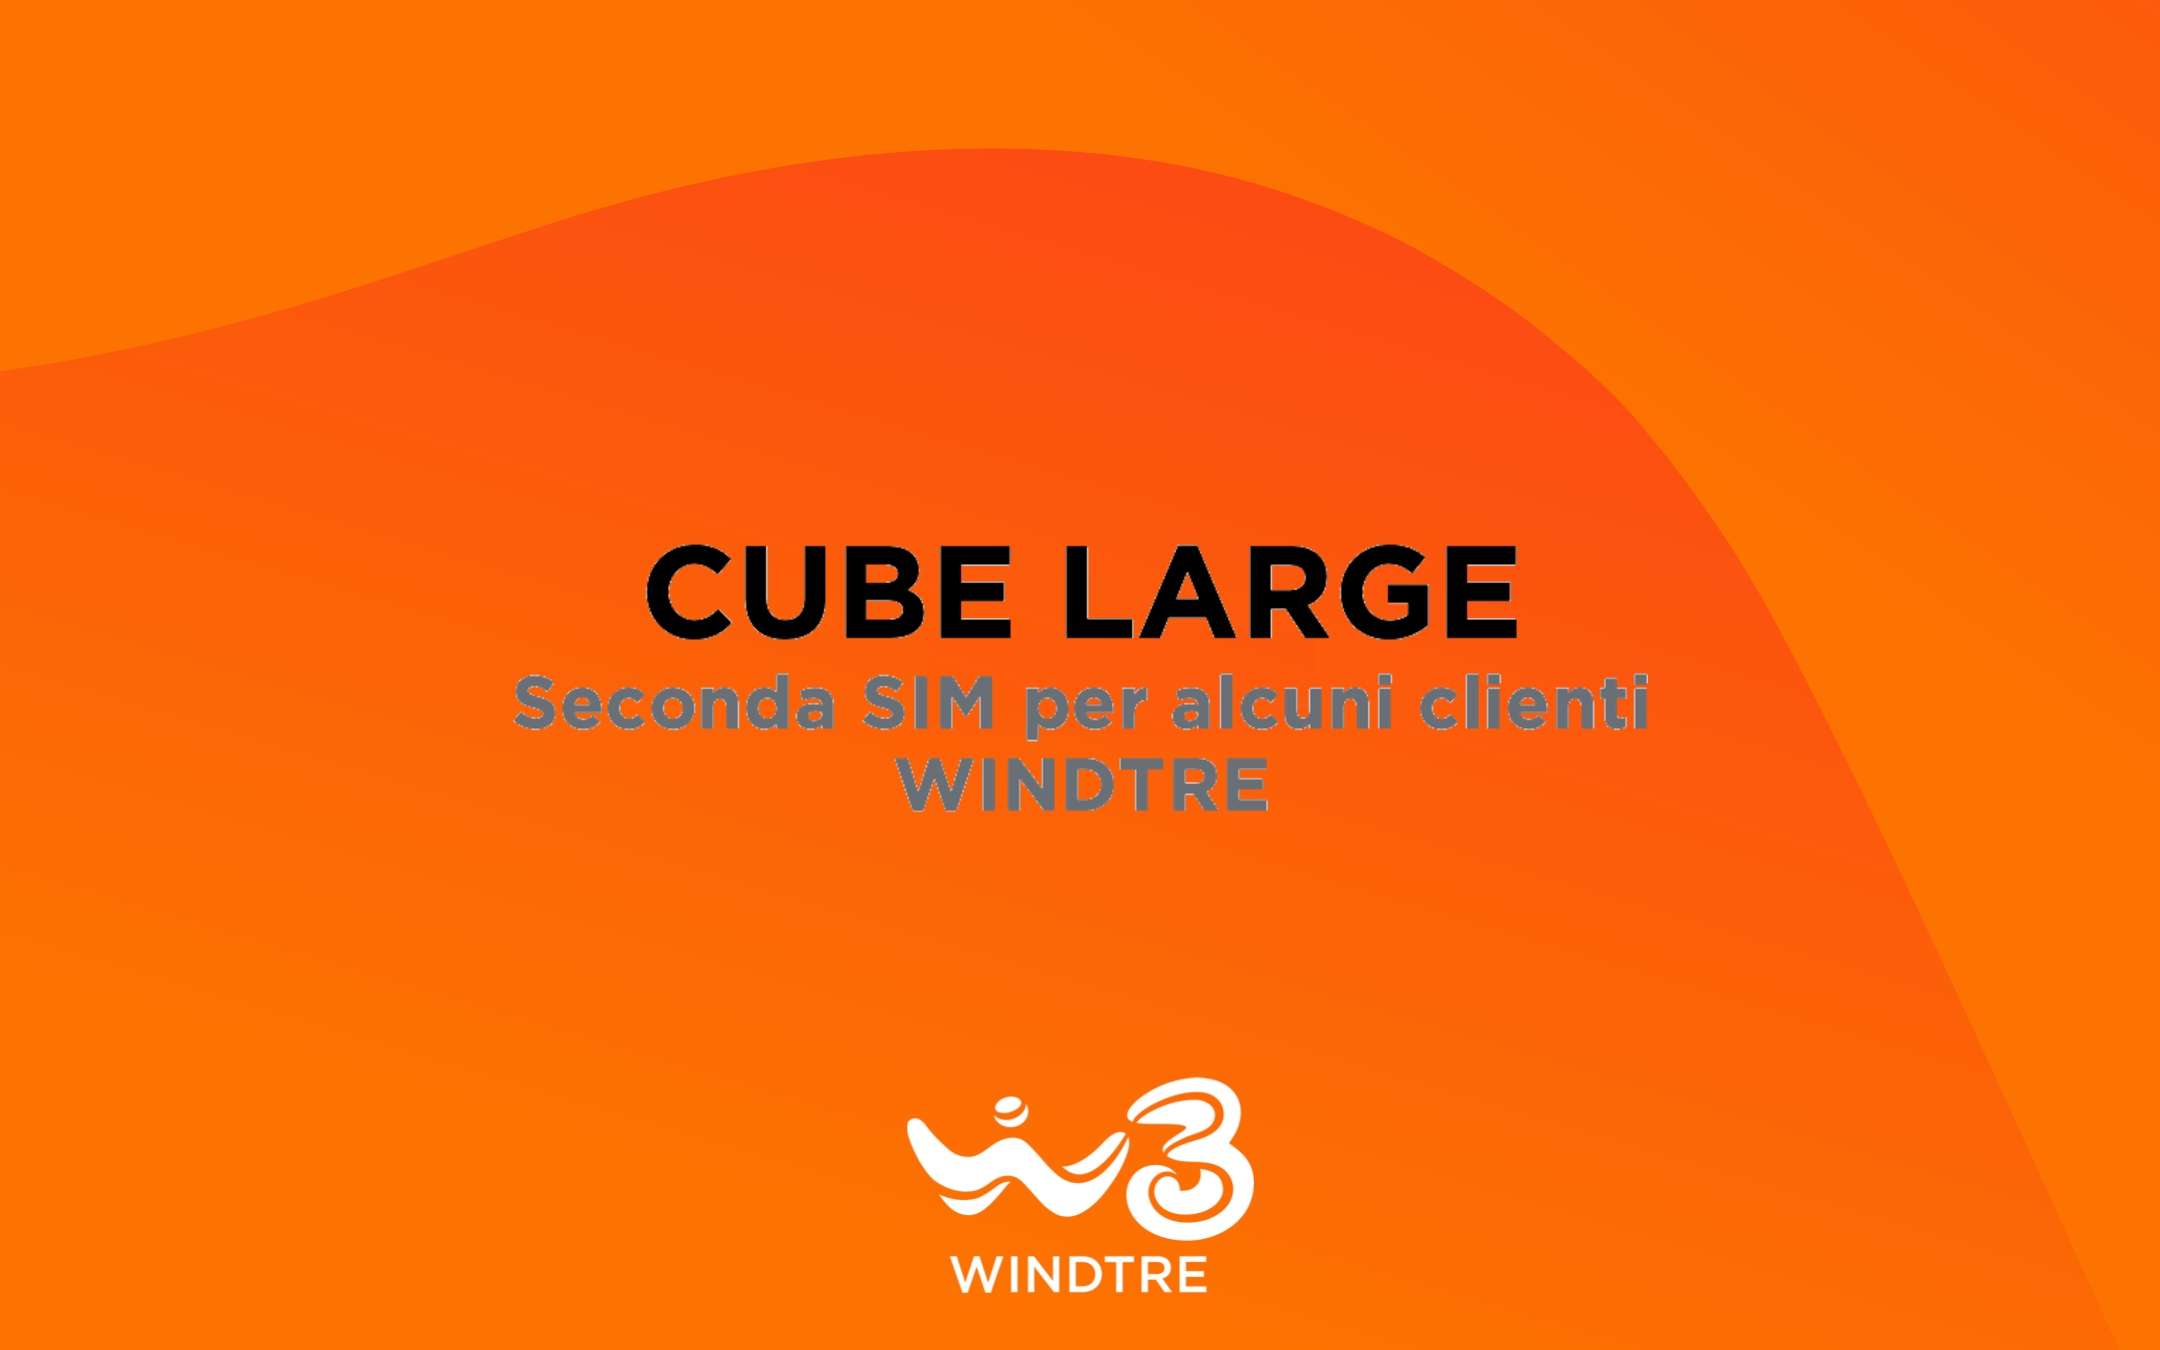 WINDTRE Cube Large: proposta come seconda SIM dati